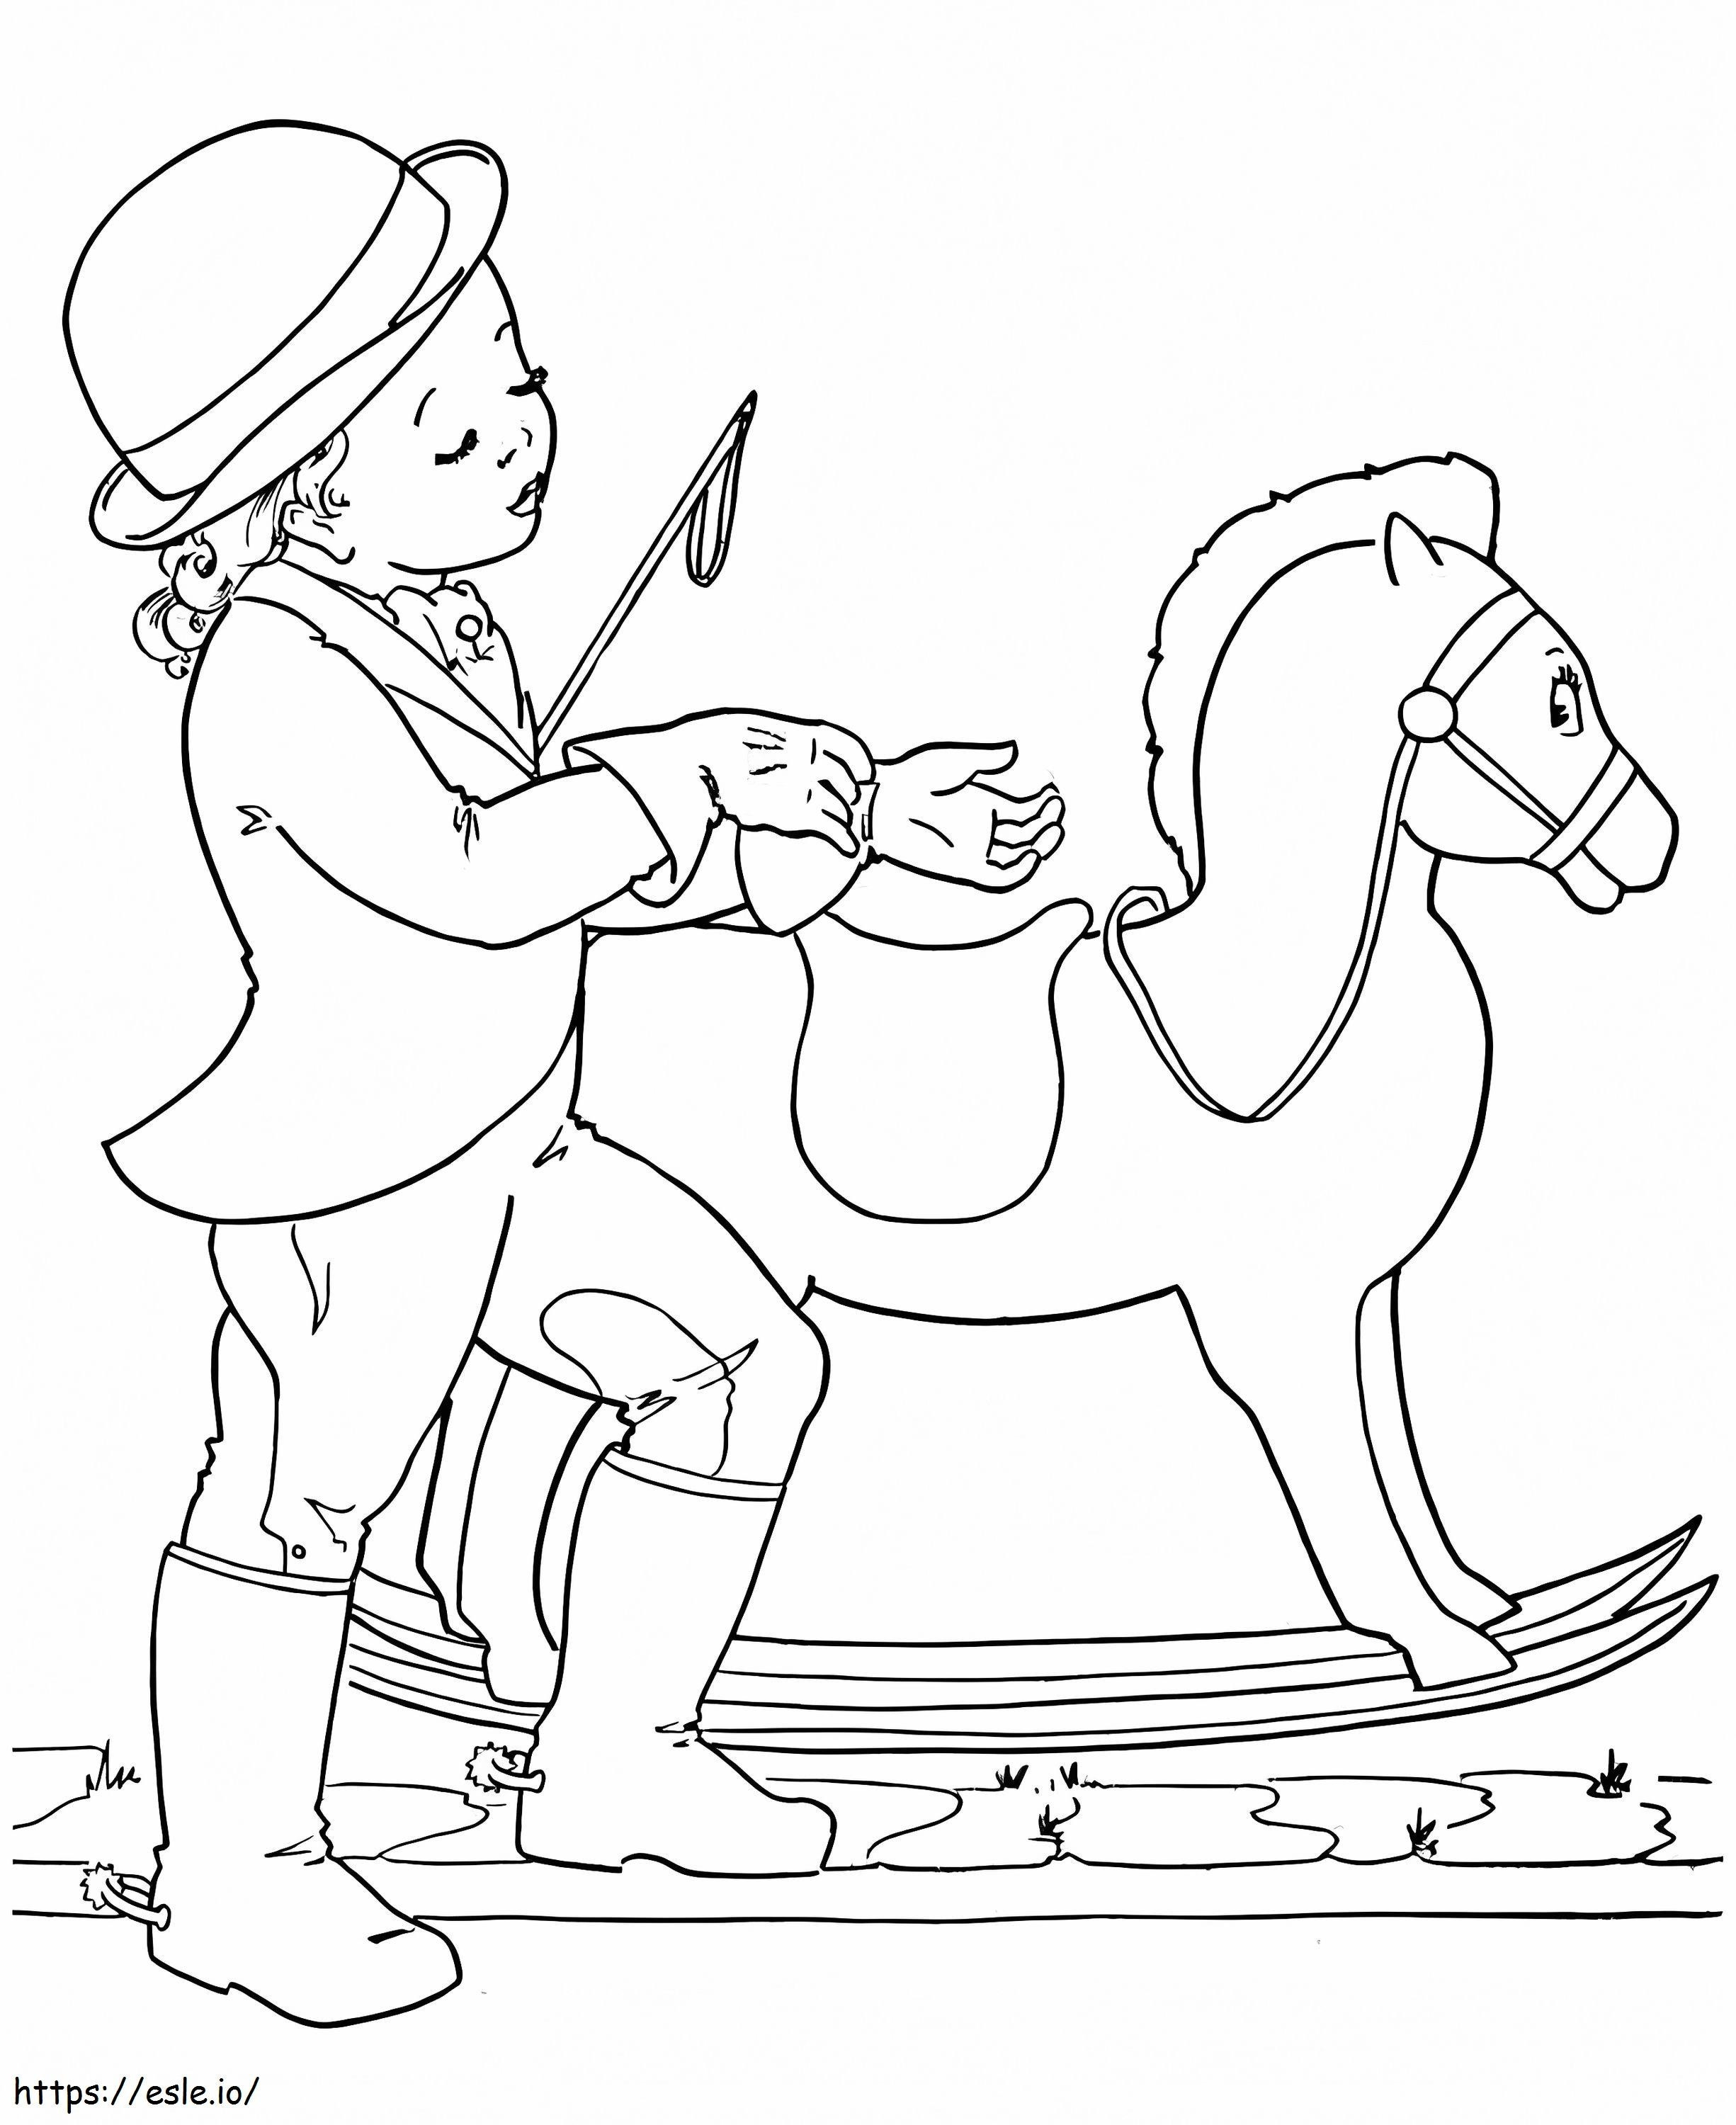 Mała Dziewczynka I Koń Na Biegunach kolorowanka